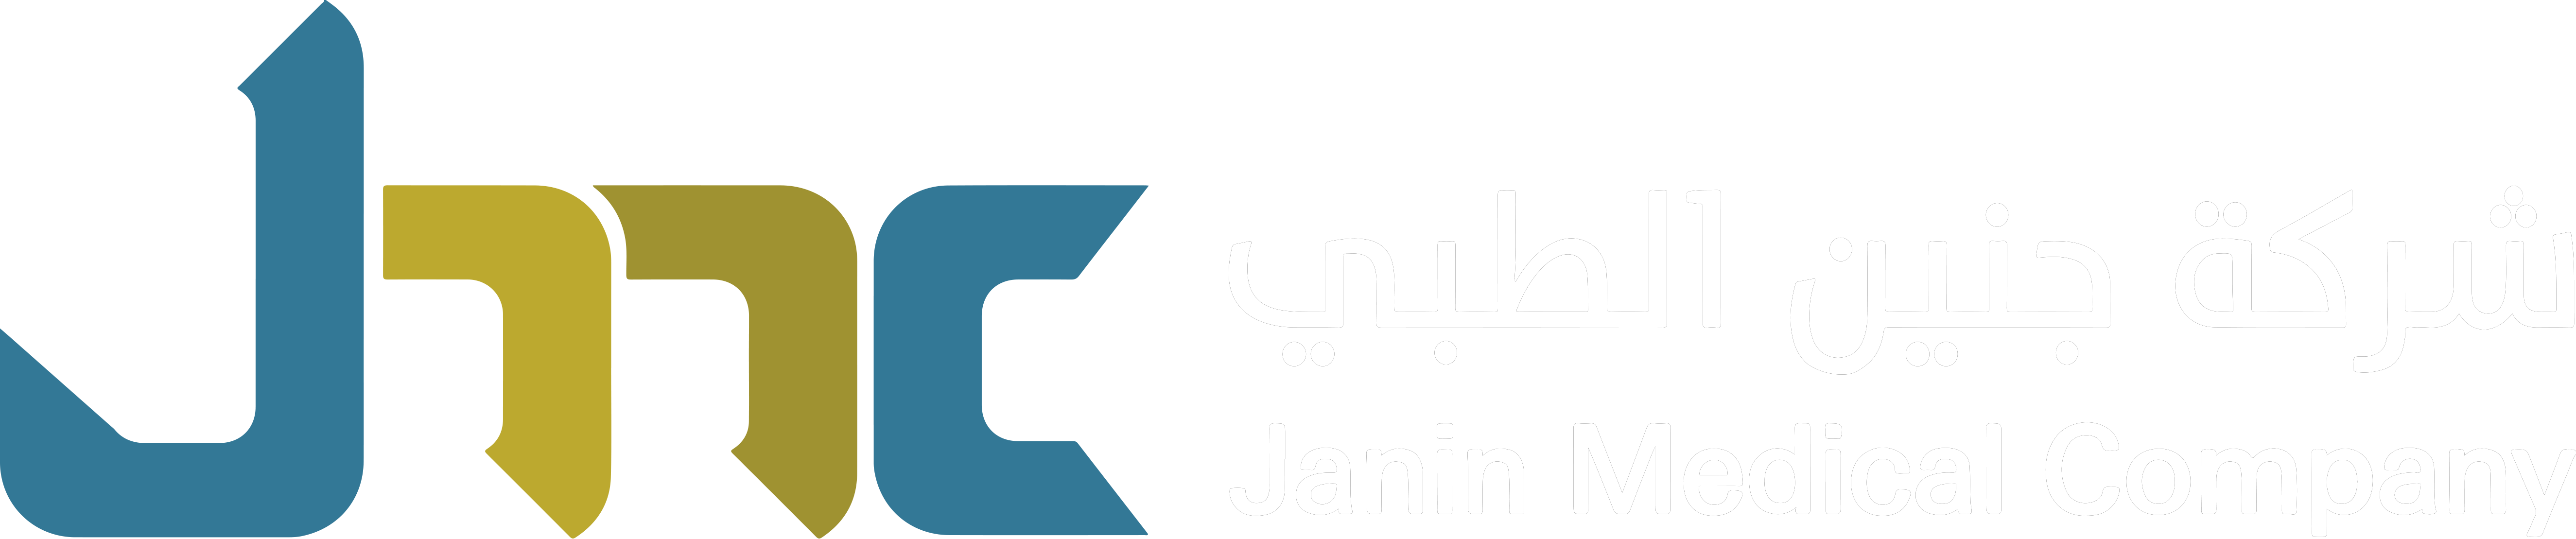 Janin Logo